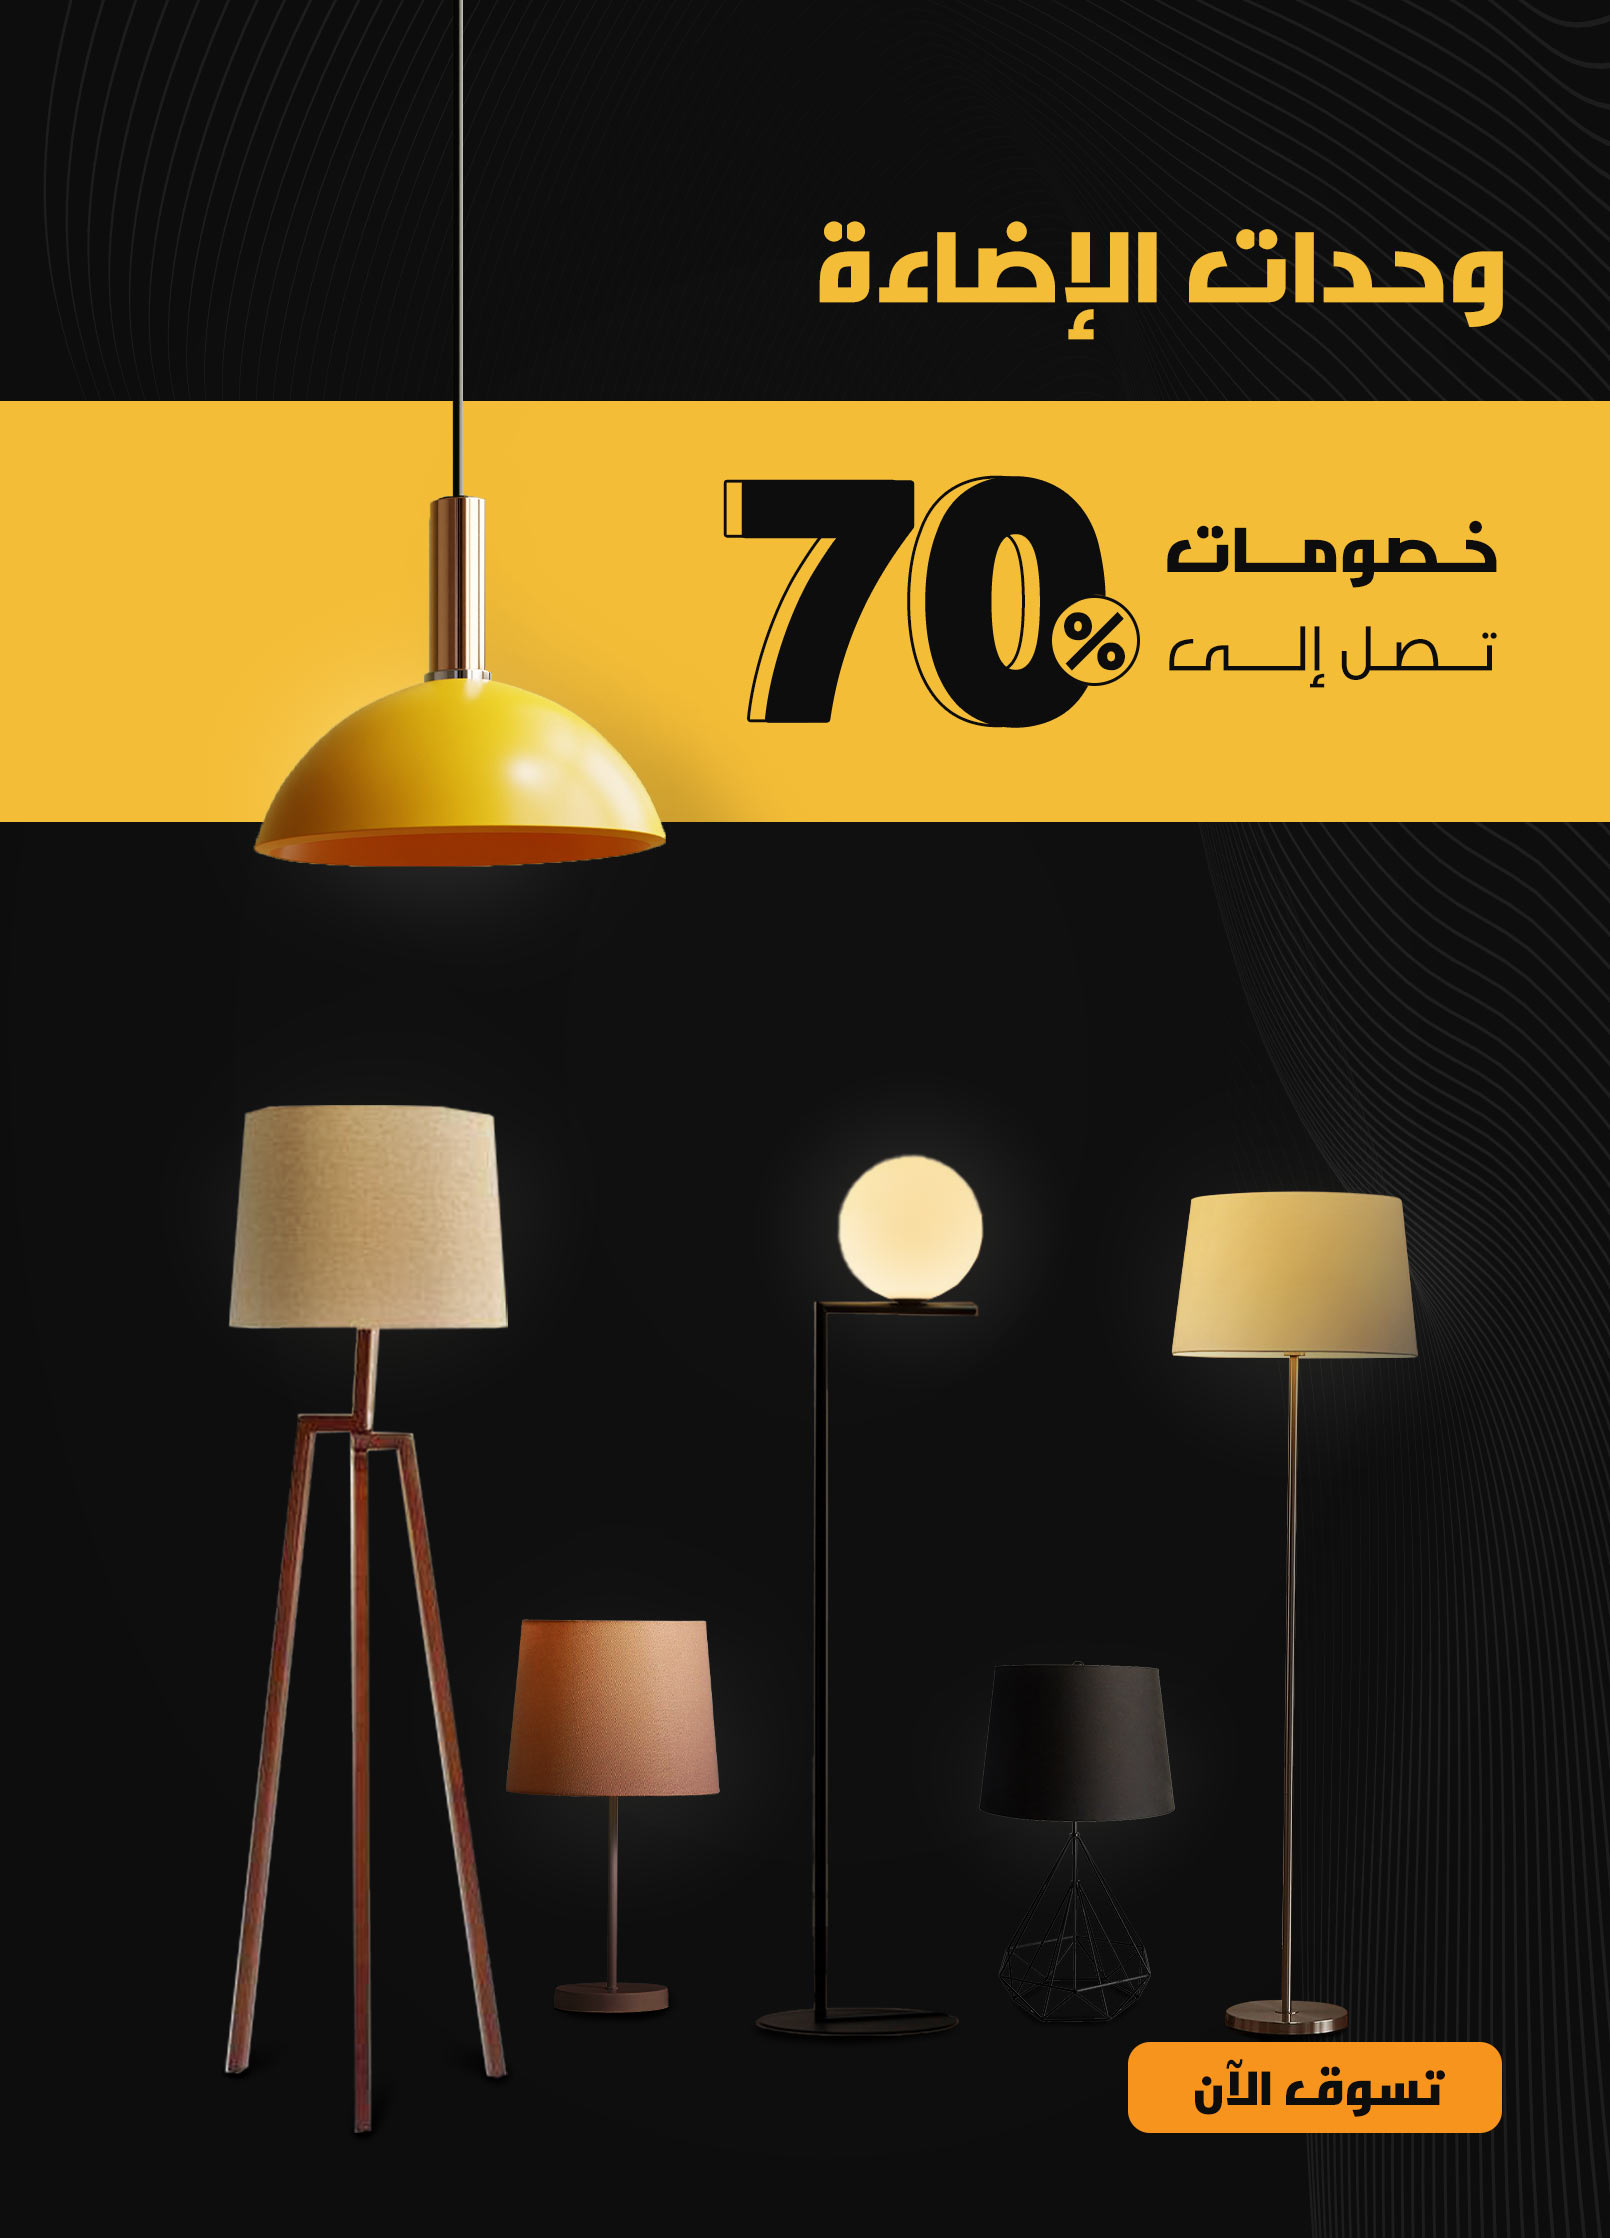 الجمعة البيضاء discounts 2022 on kemitt